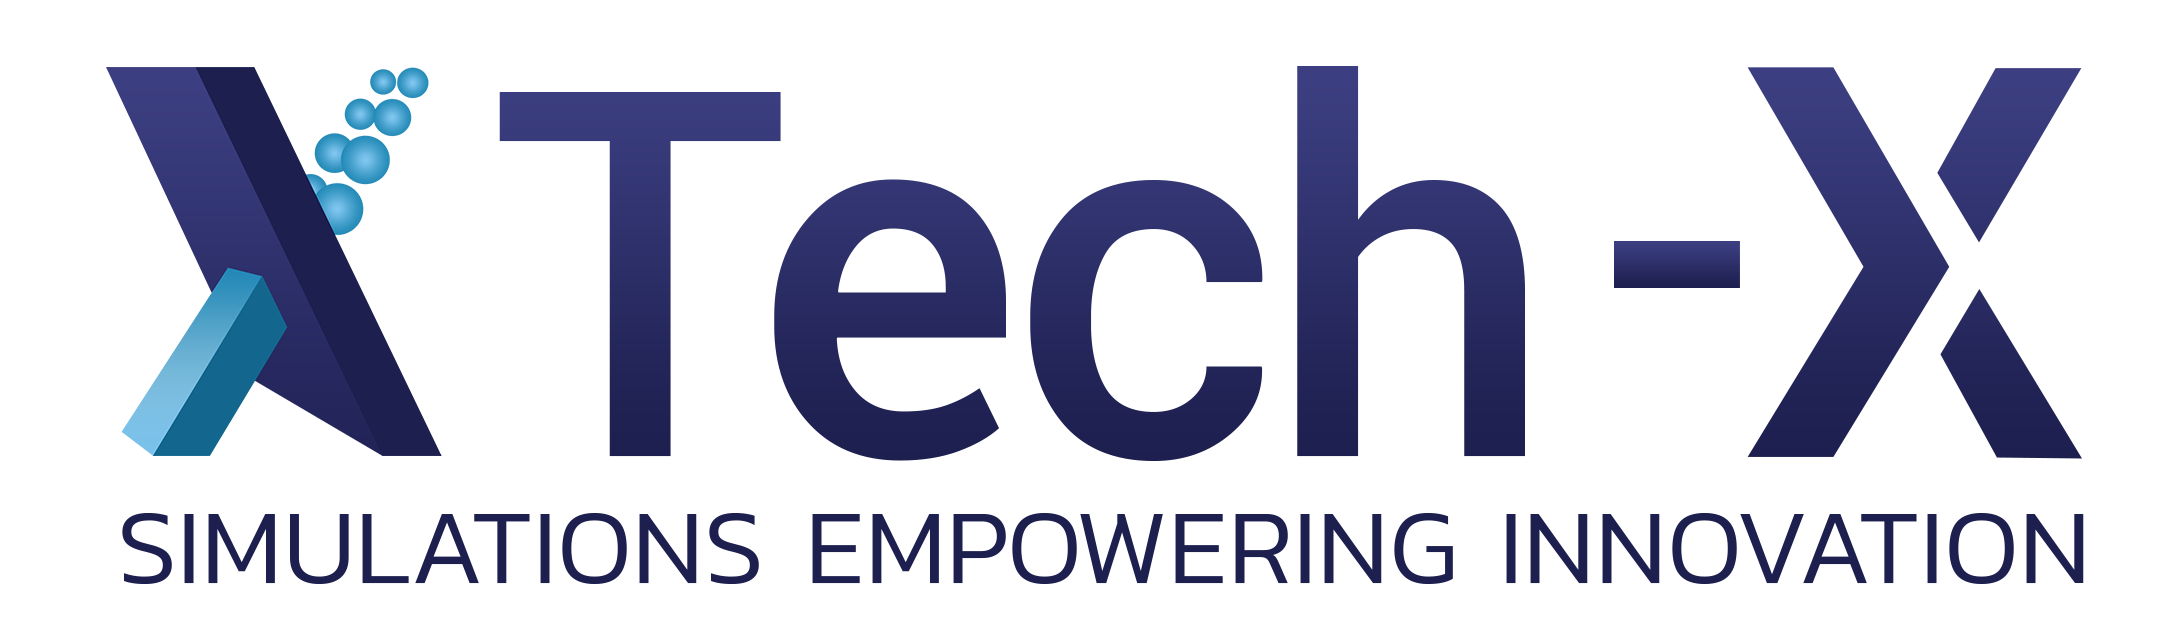 TECH-X logo